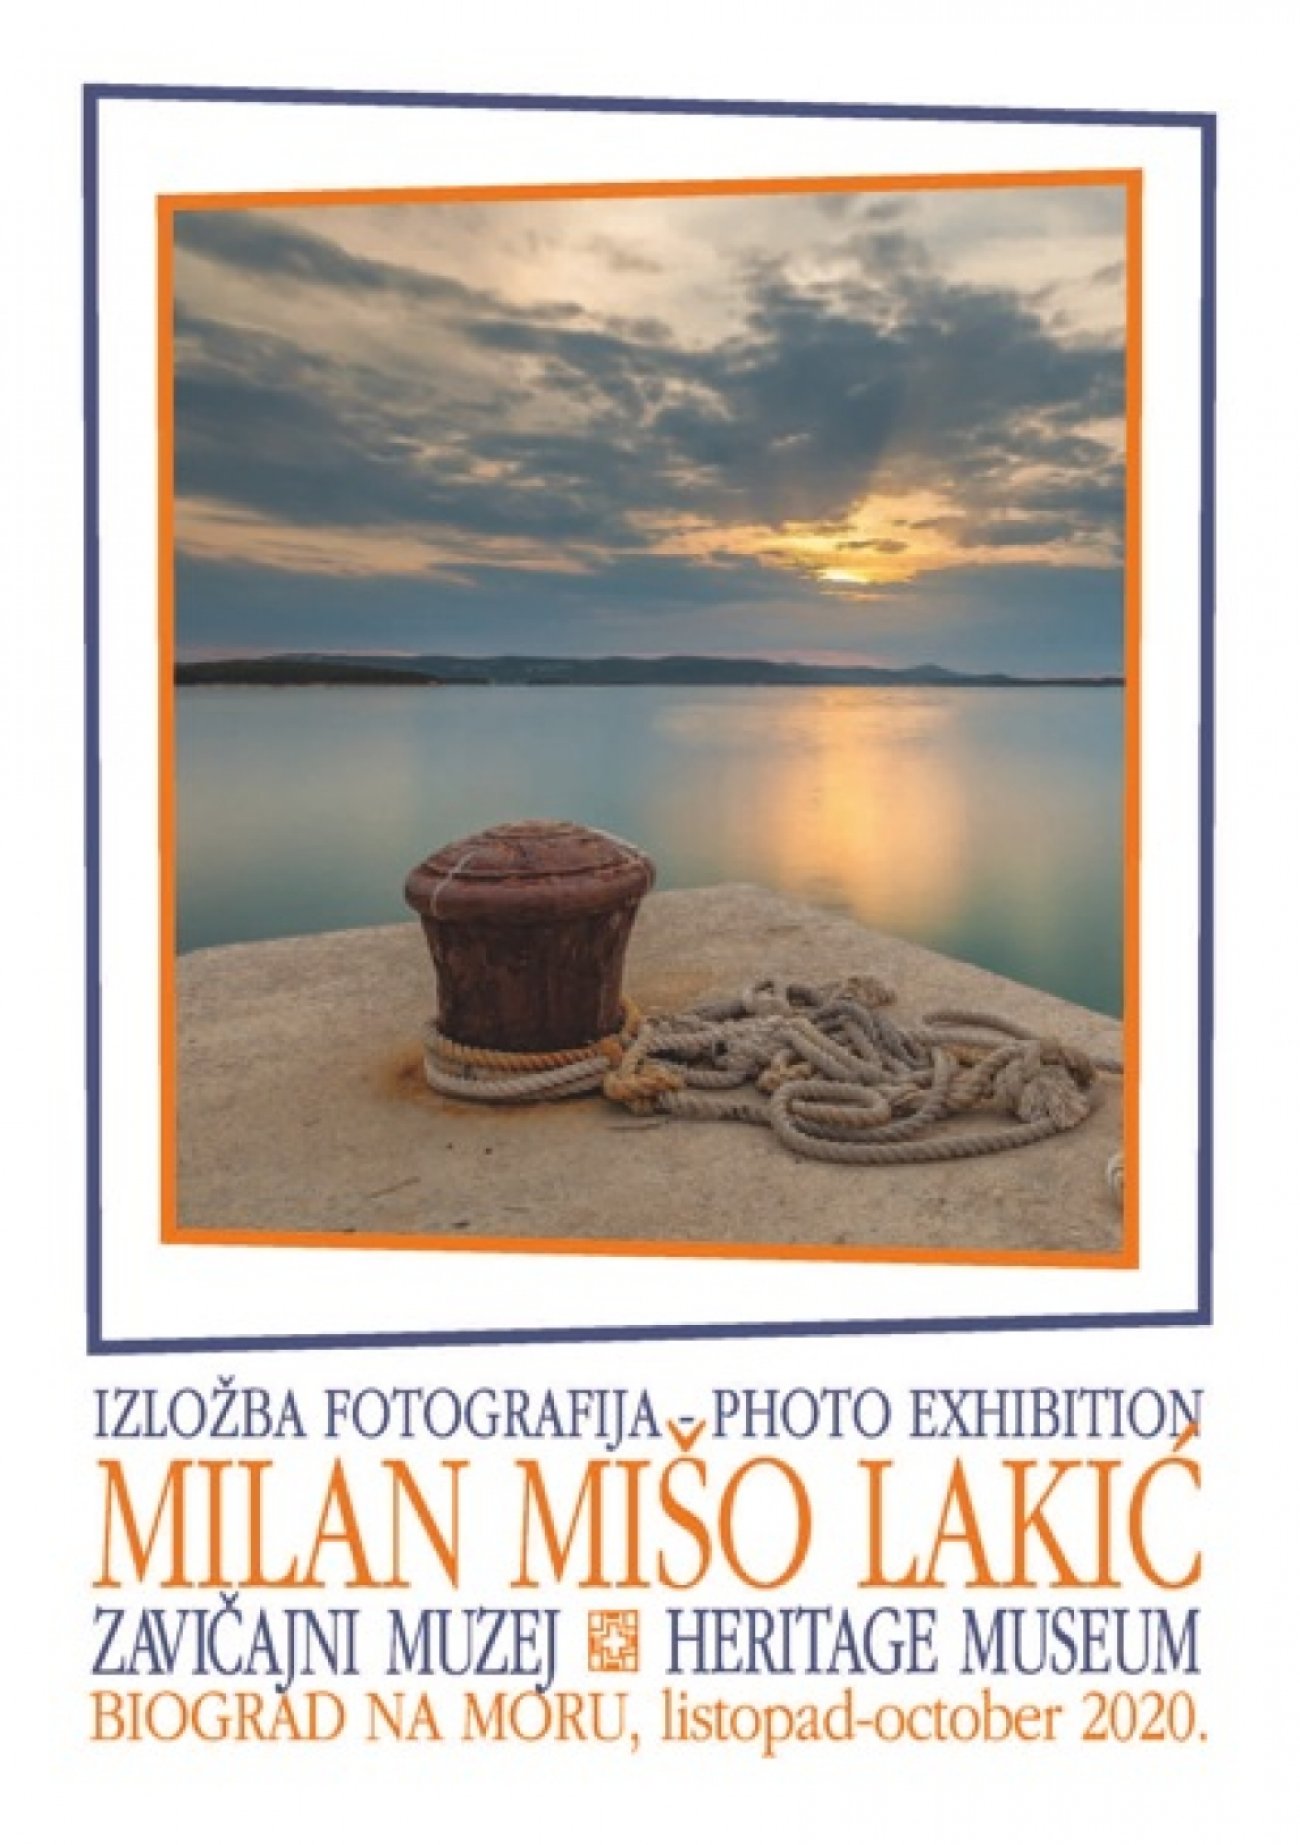 Izložba fotografija Milana Miše Lakića 23. listopada 2020. godine u Zavičajnom muzeju u Biogradu na Moru